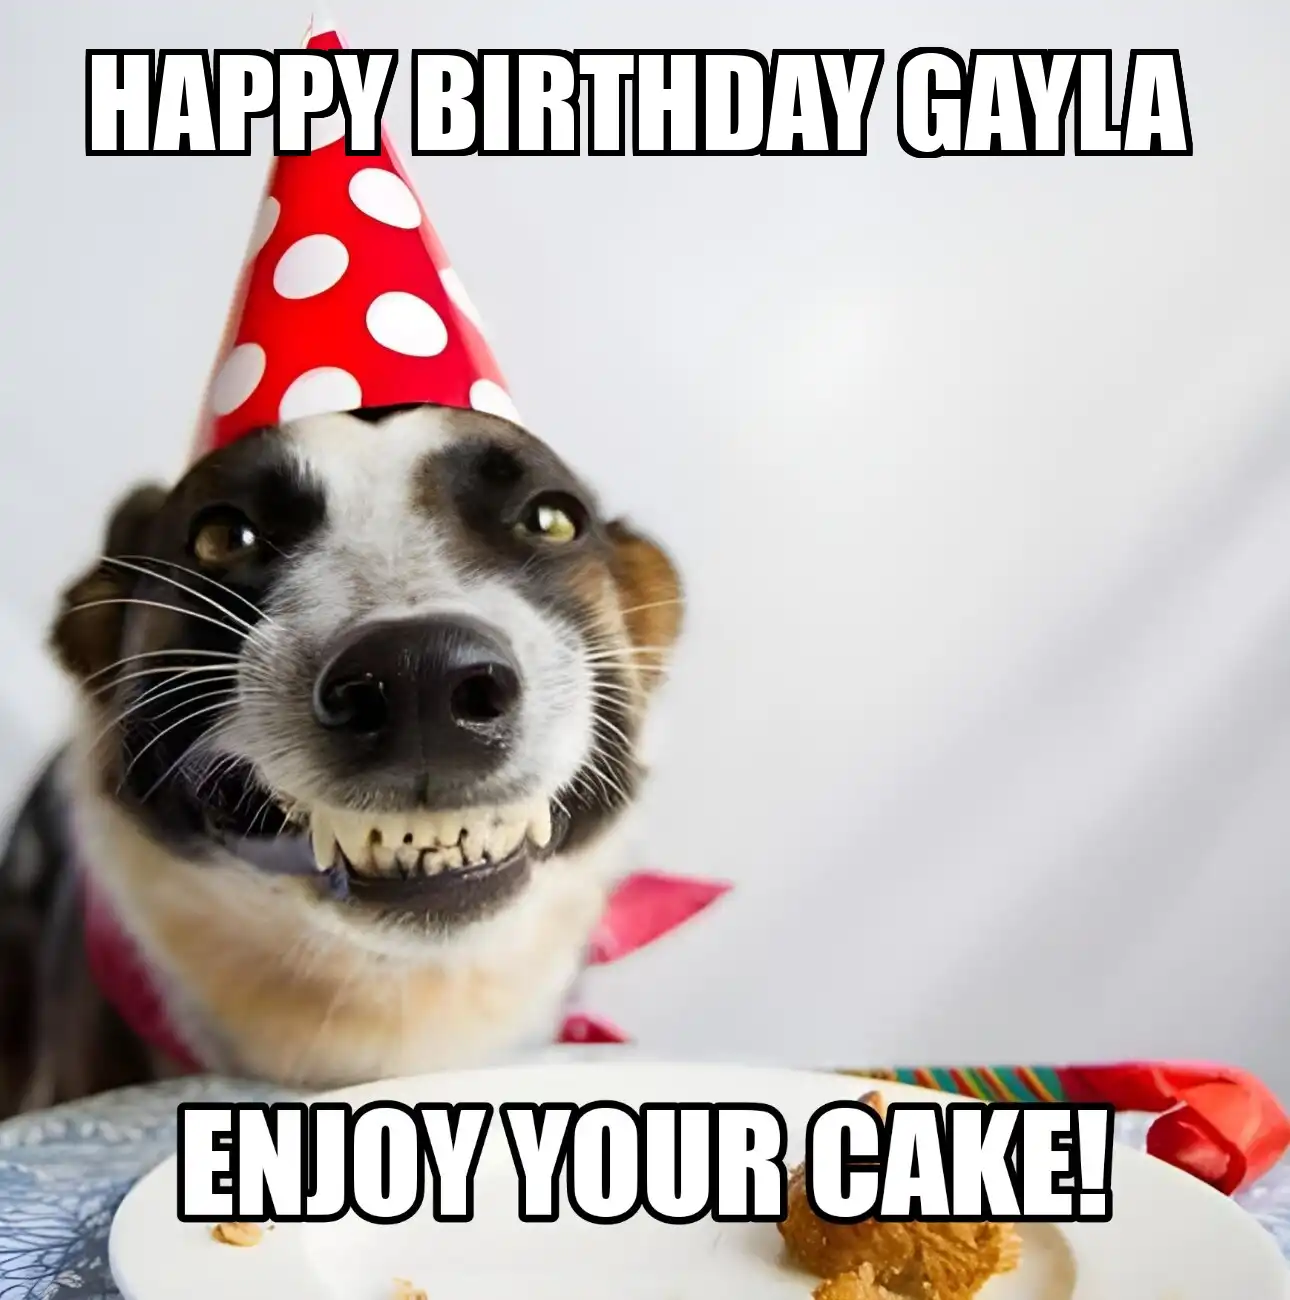 Happy Birthday Gayla Enjoy Your Cake Dog Meme